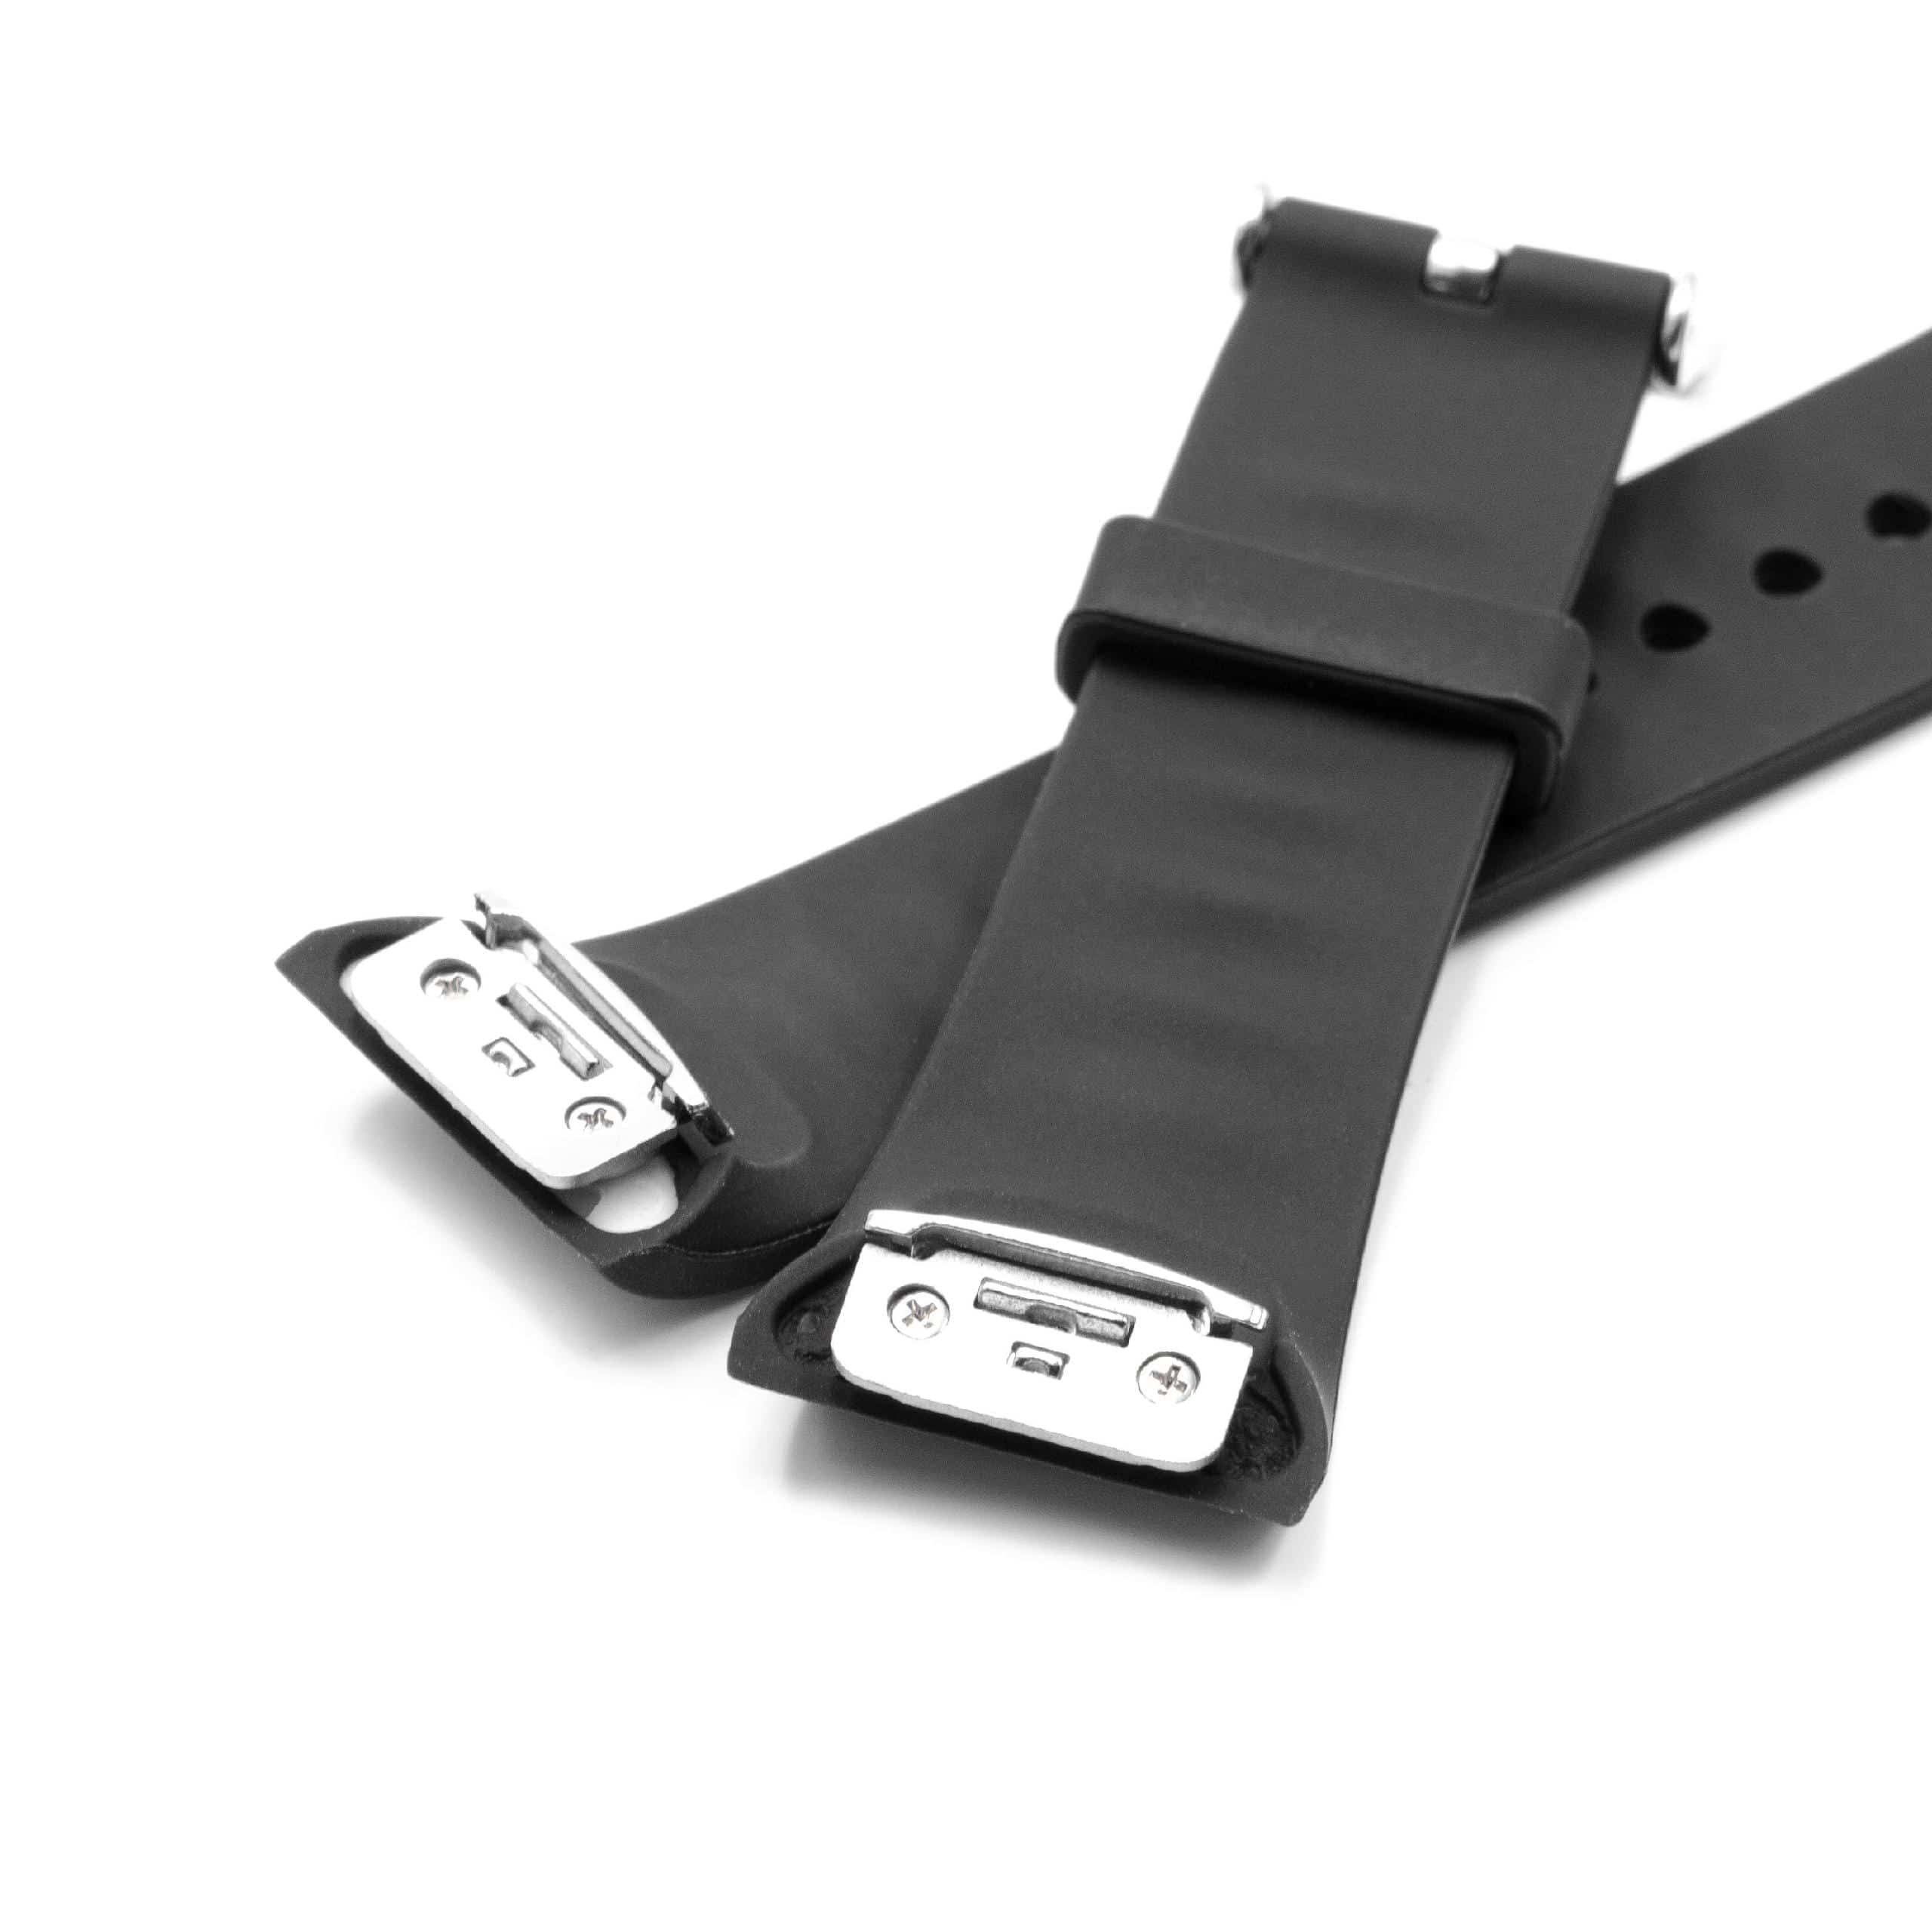 Bracelet pour montre intelligente Samsung Gear - 11,7 + 7,6 cm de long, 18,5mm de large, silicone, noir